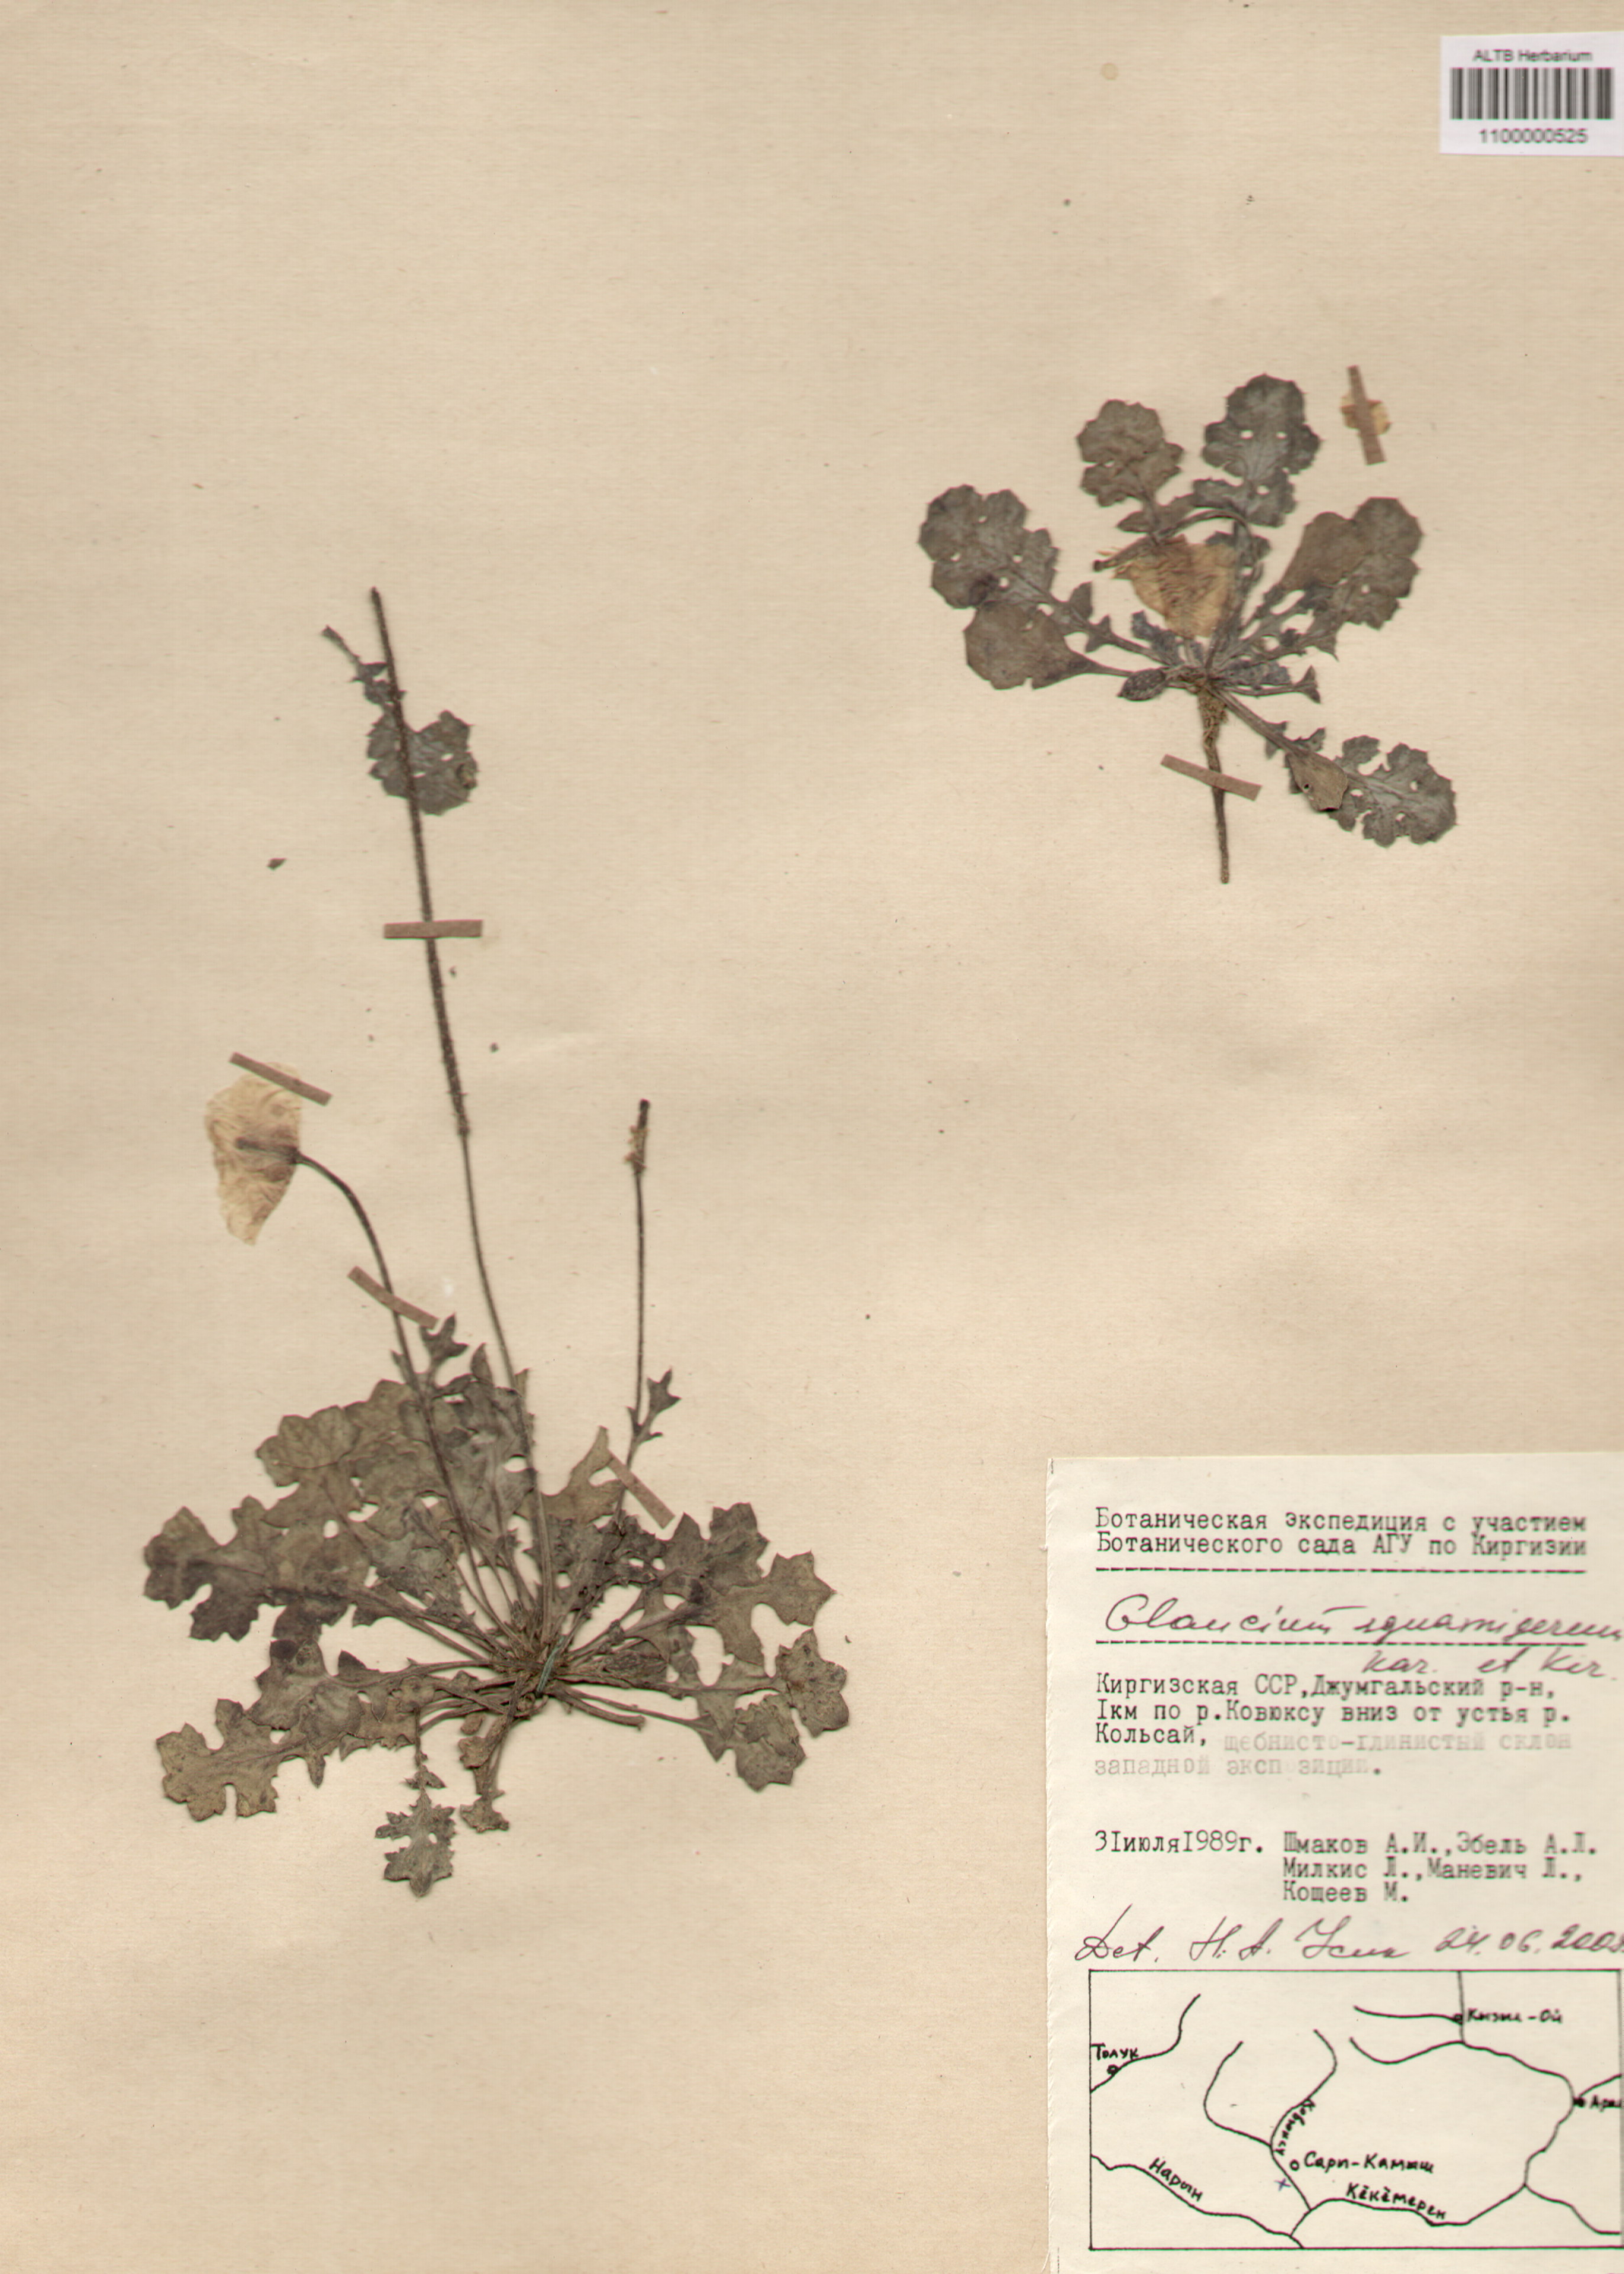 Papaveraceae,Glaucium squamigerum Kar. et Kir.